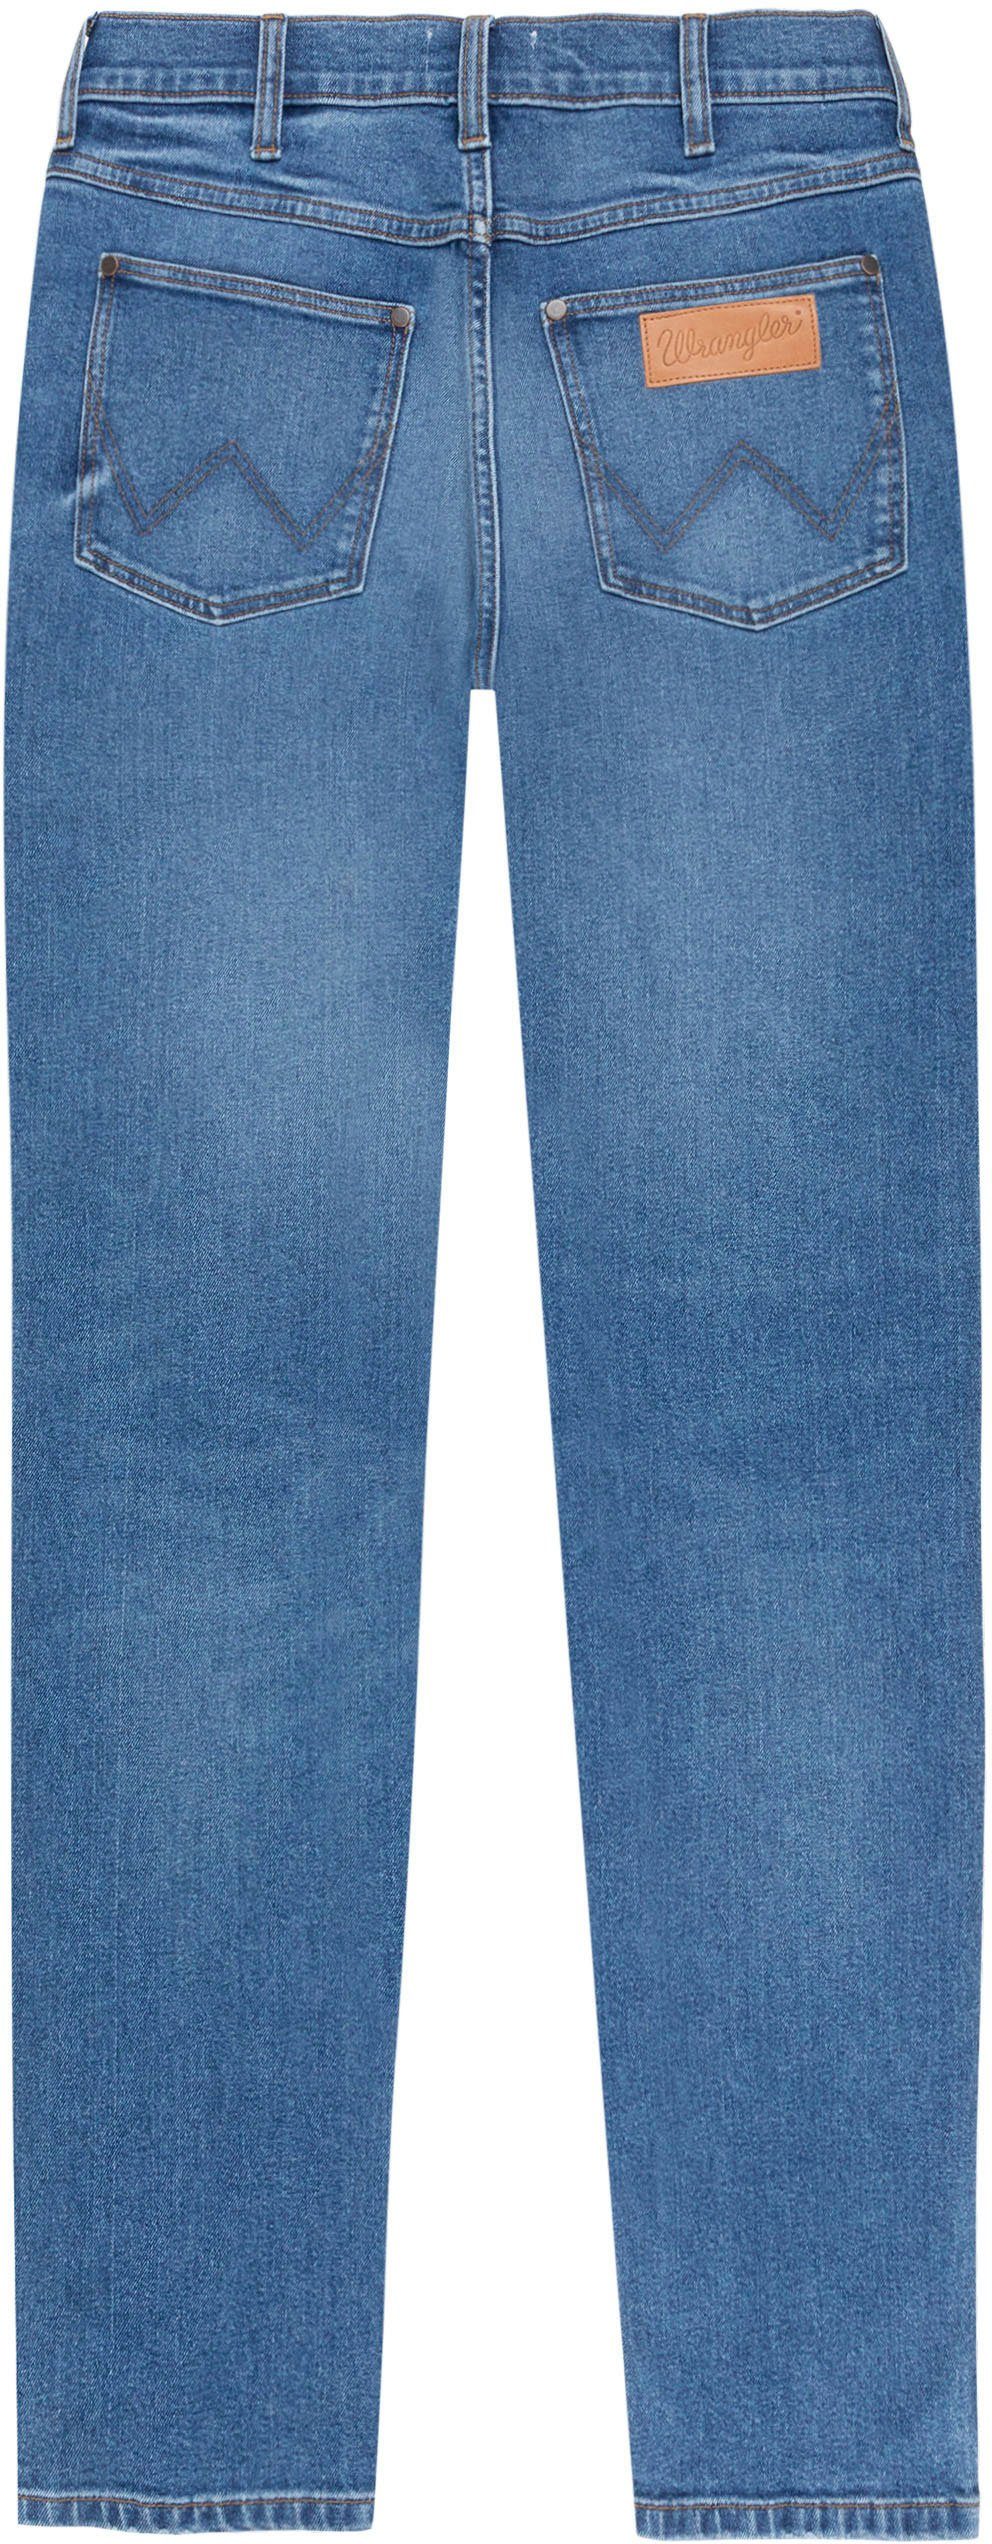 5-Pocket-Jeans smoke sea Wrangler River